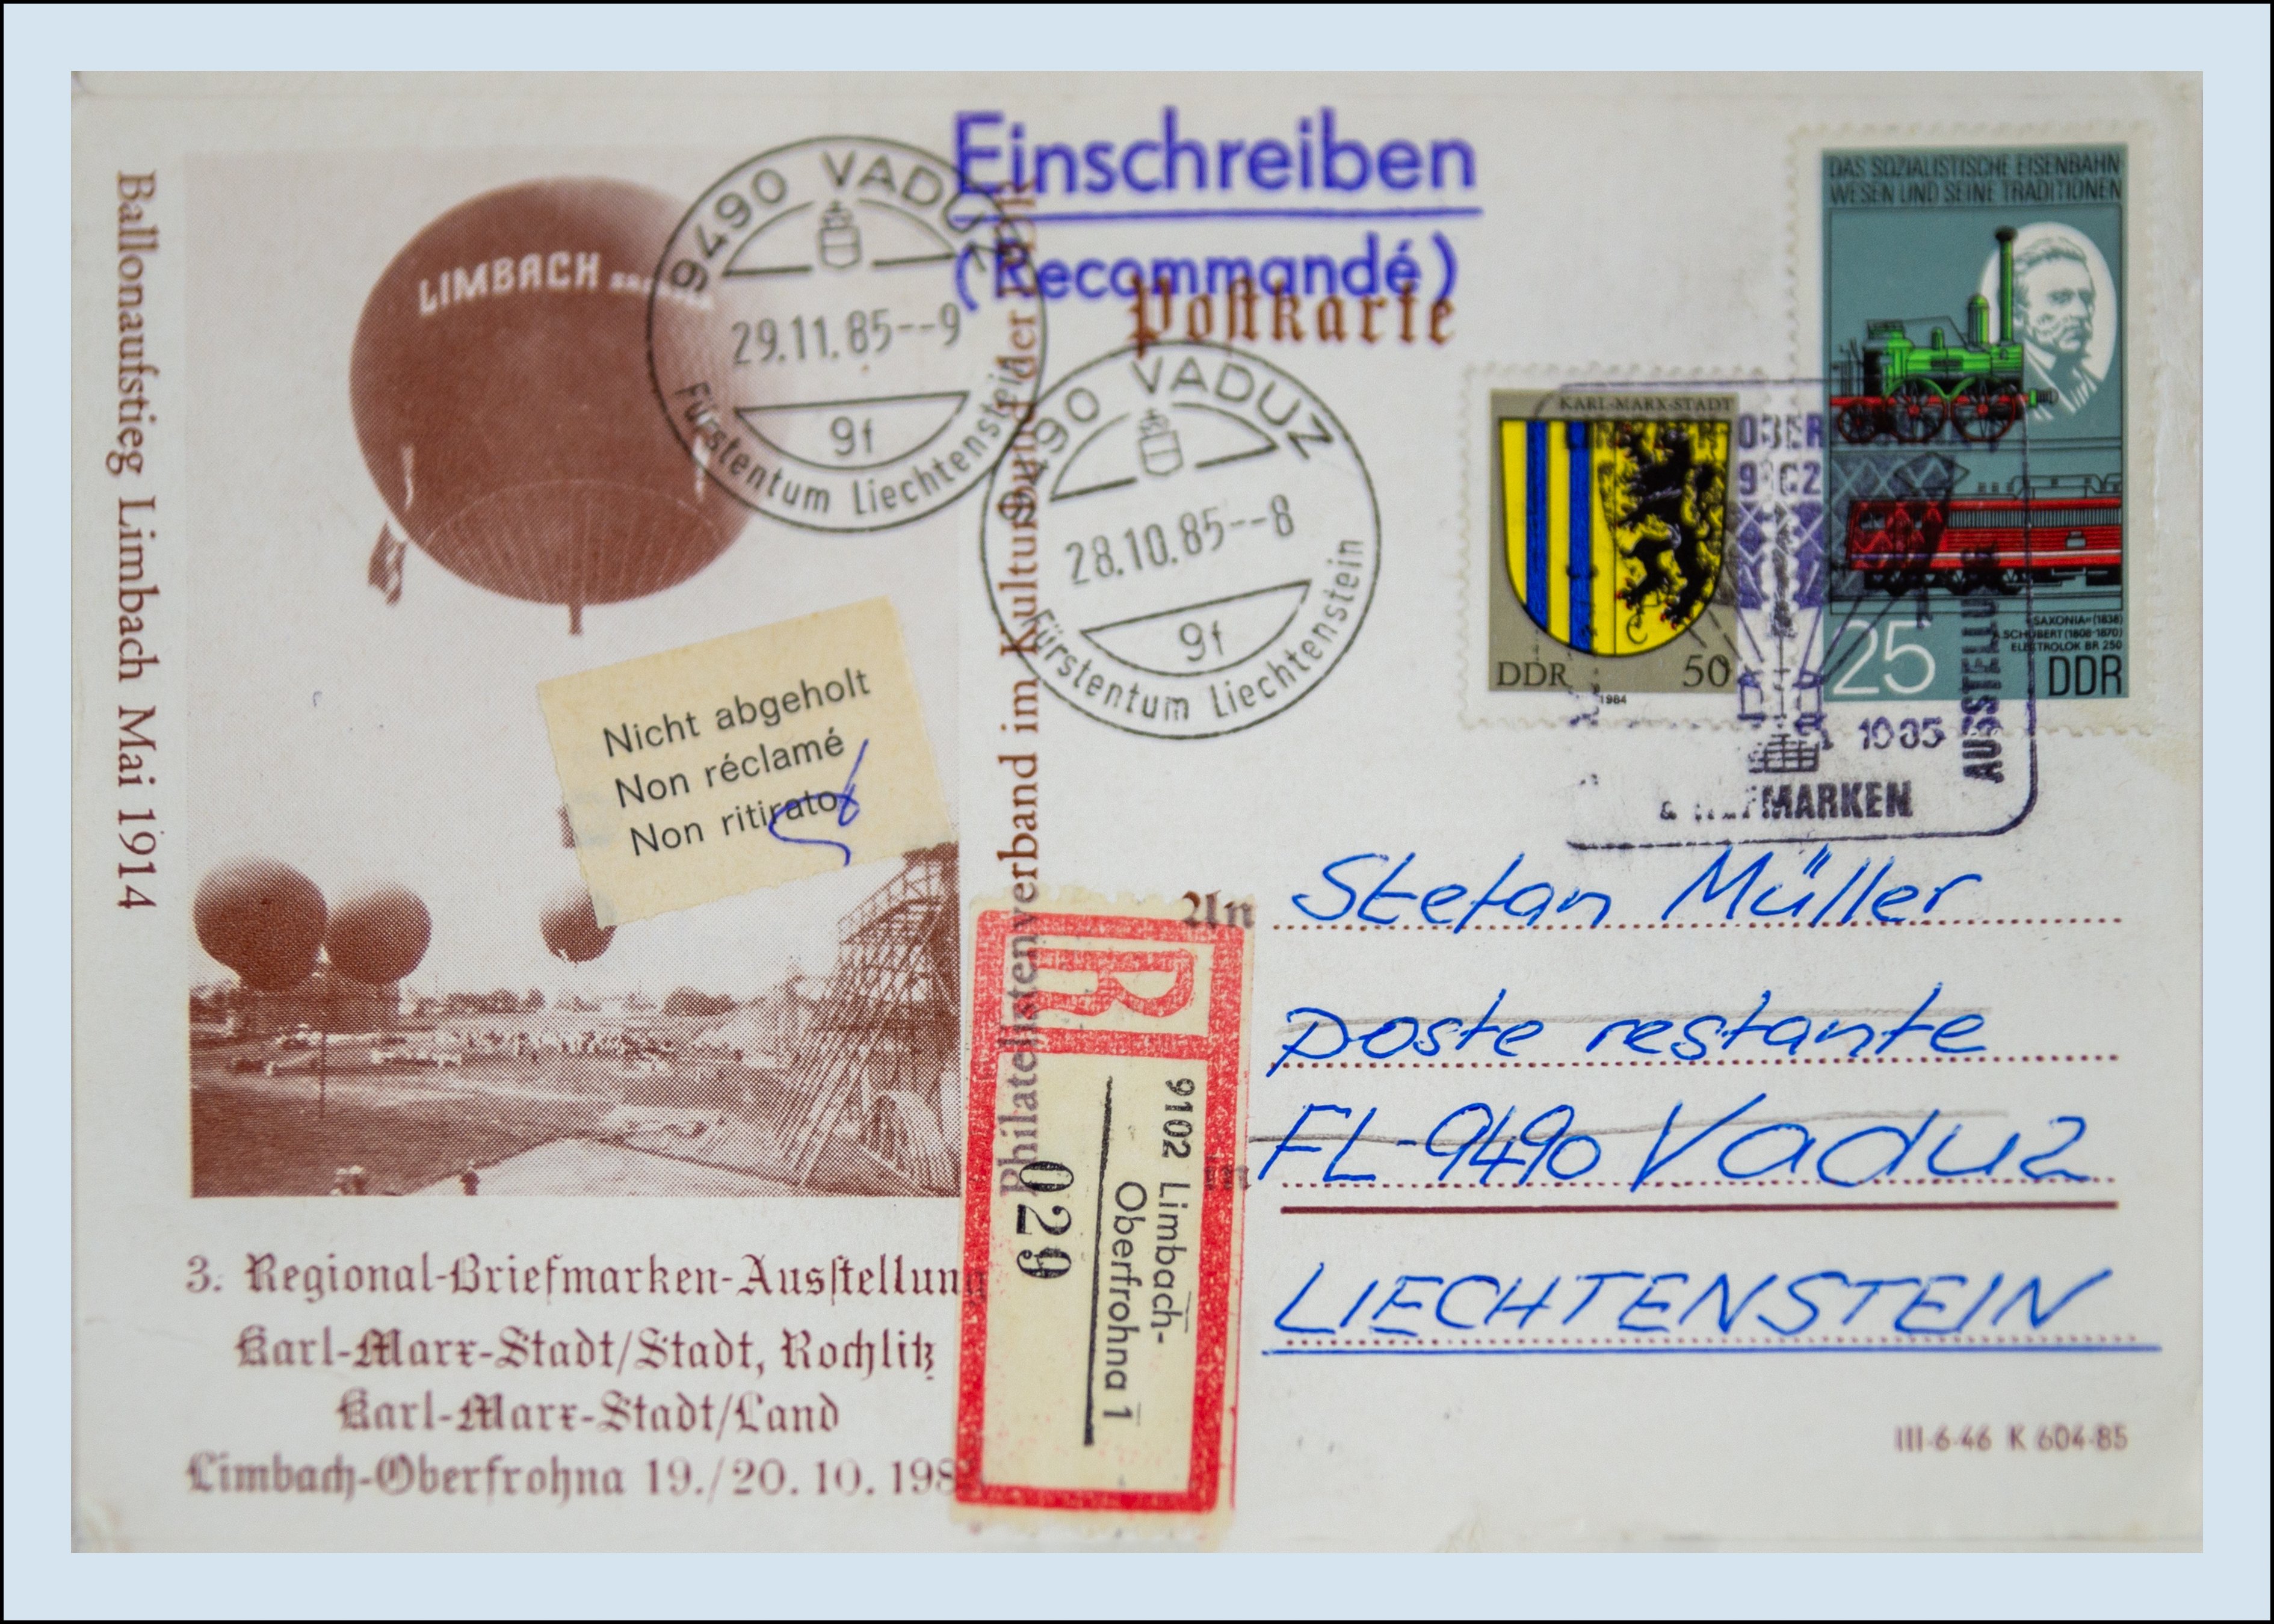 Ansichtskarte (Reprint) "Ballonaufstieg Limbach Mai 1914", als Einschreiben von Limbach-Oberfrohna nach Vaduz, Sonderstempel Limbach-Oberfrohna 1, 3.  (Verkehrsmuseum Dresden CC BY-NC-SA)